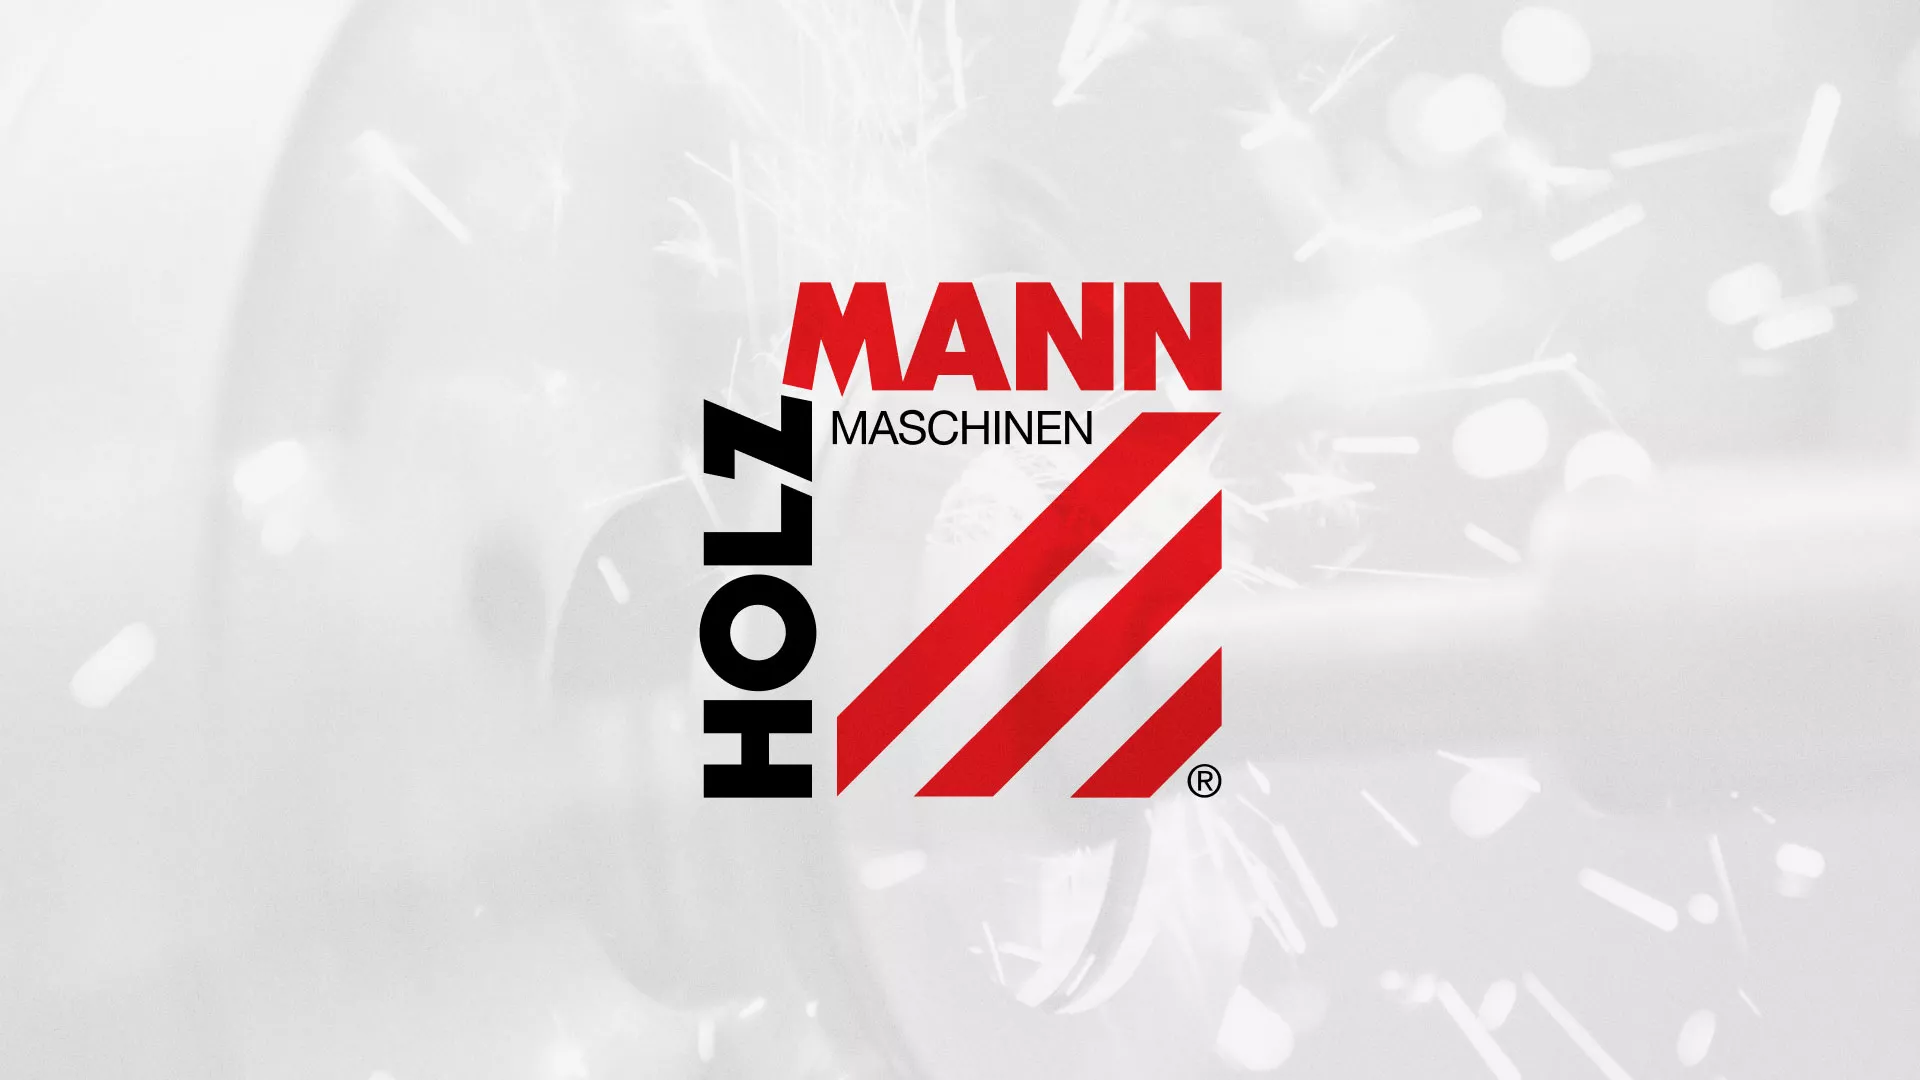 Создание сайта компании «HOLZMANN Maschinen GmbH» в Южно-Сахалинске